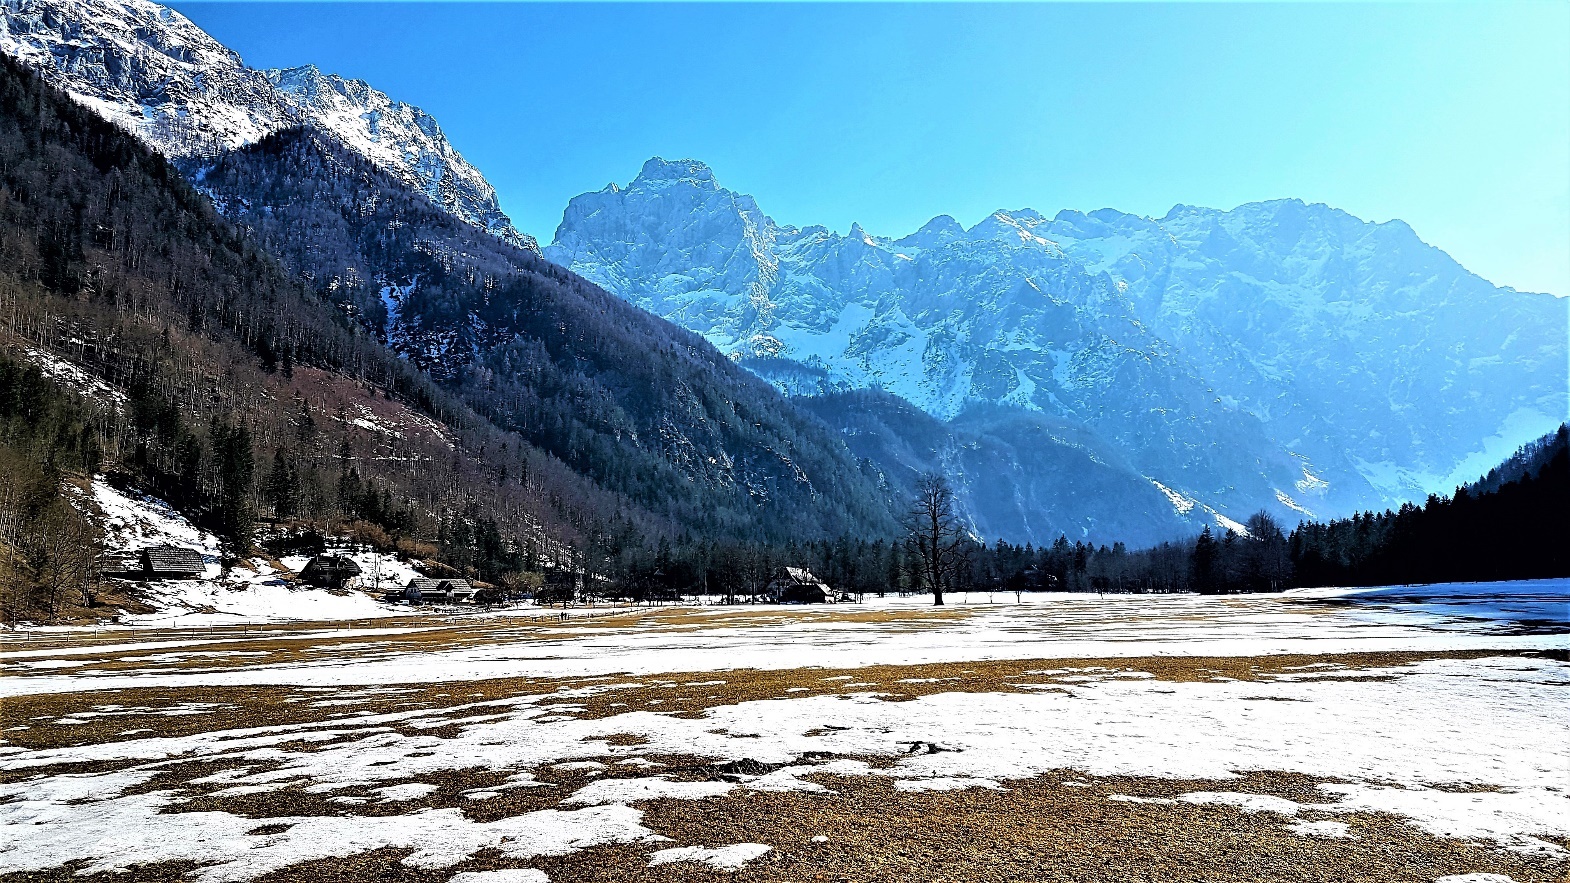 Slika, ki vsebuje besede gora, zunanje, sneg, narava

Opis je samodejno ustvarjen